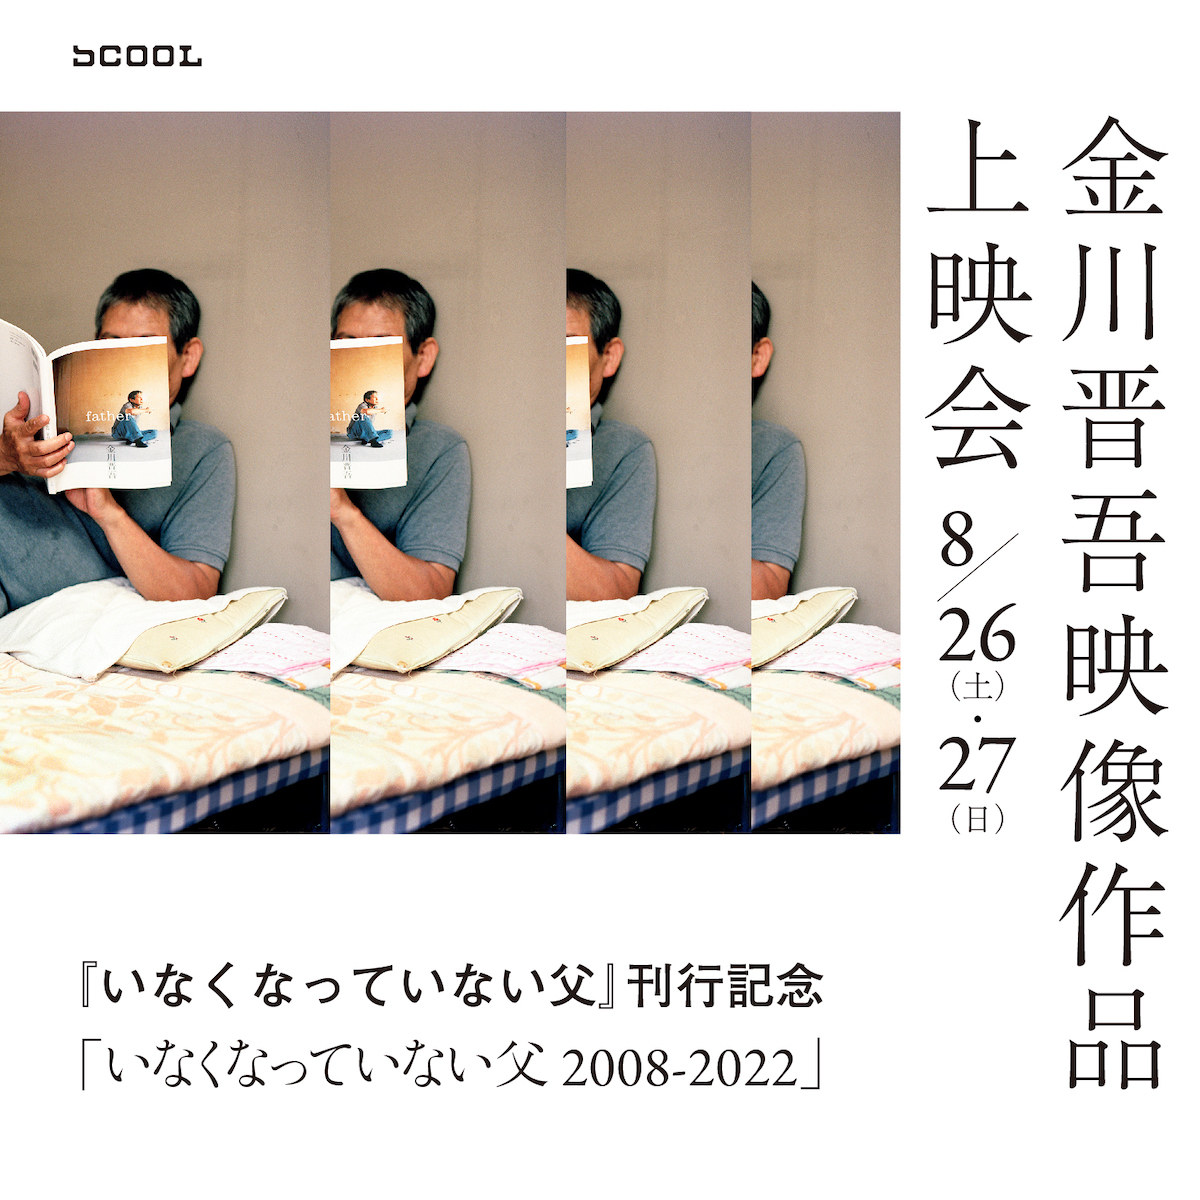 『いなくなっていない父』刊行記念<br>金川晋吾映像作品上映会「いなくなっていない父 2008-2022」